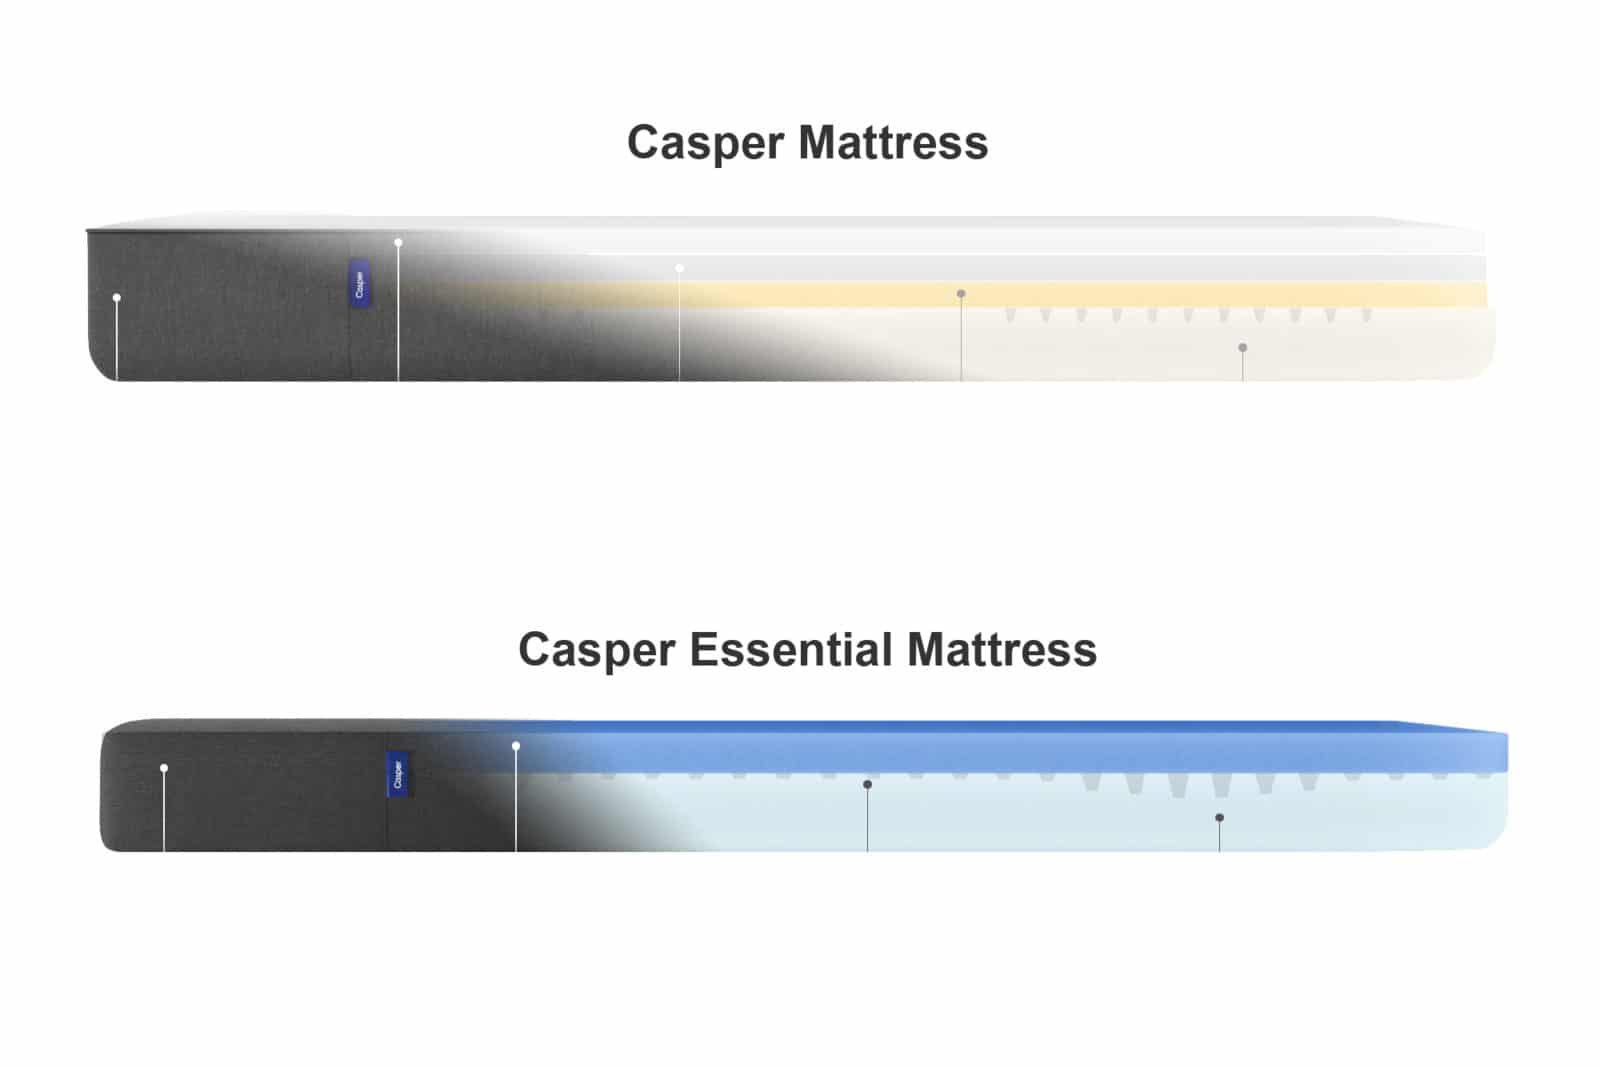 Casper beds